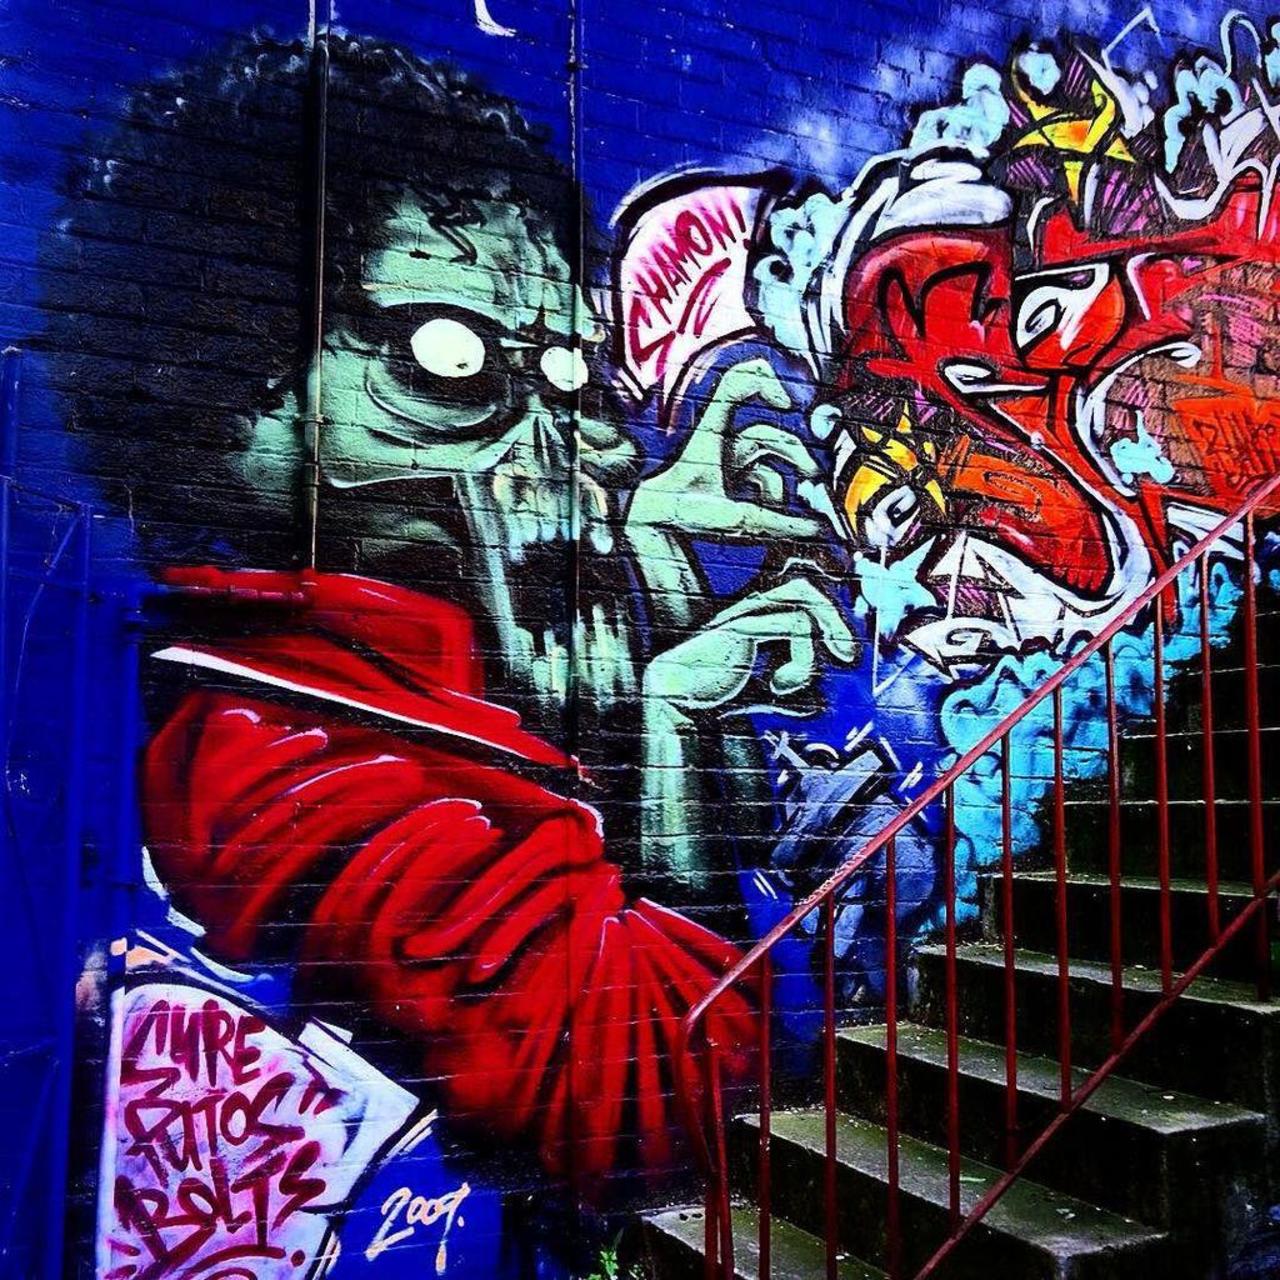 #streetart #streetartist #artist #art #arte #arteurbano #urban #urbano #mural #graffiti #graffitiart #wallart #city… http://t.co/o6X3G0Bbn1